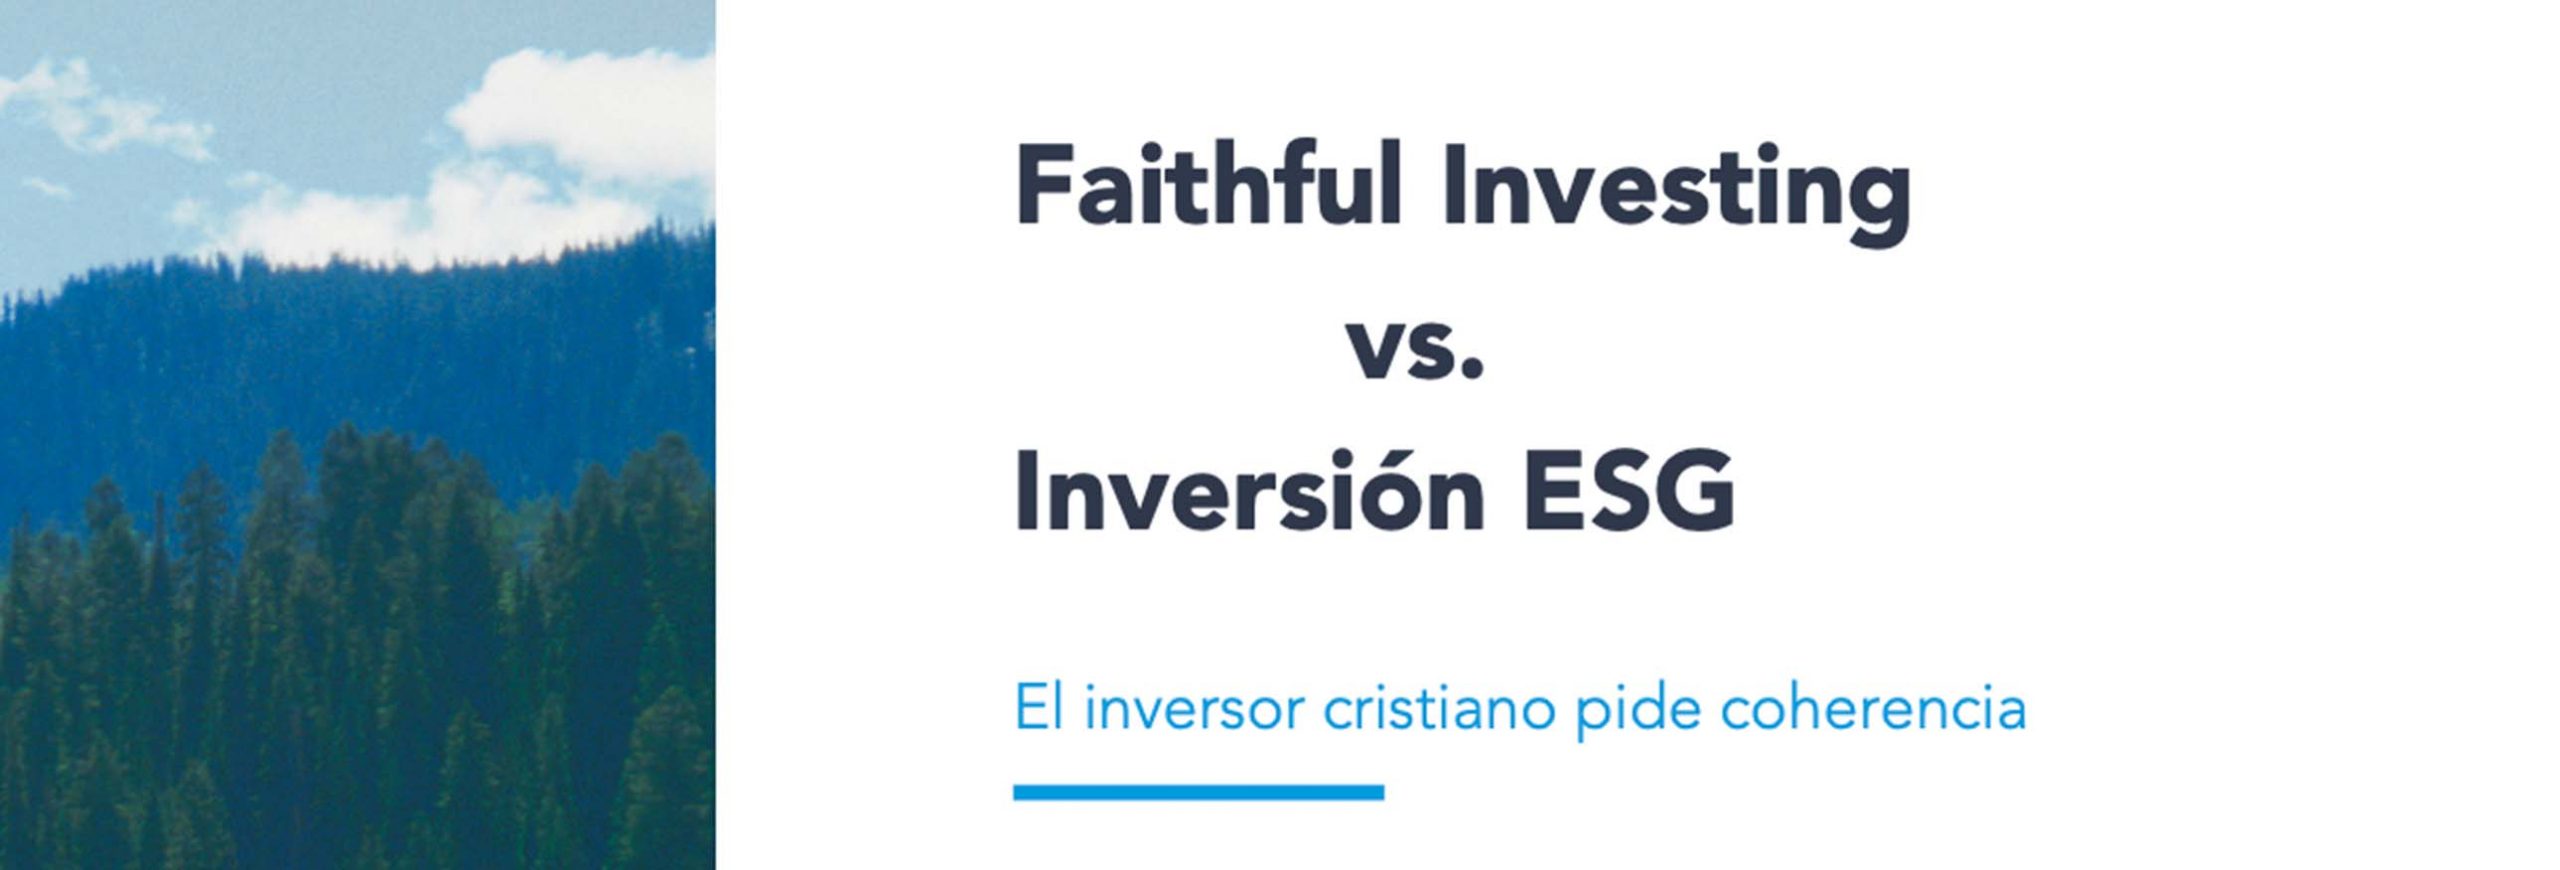 En este momento estás viendo Faithful Investing vs. Inversión ESG